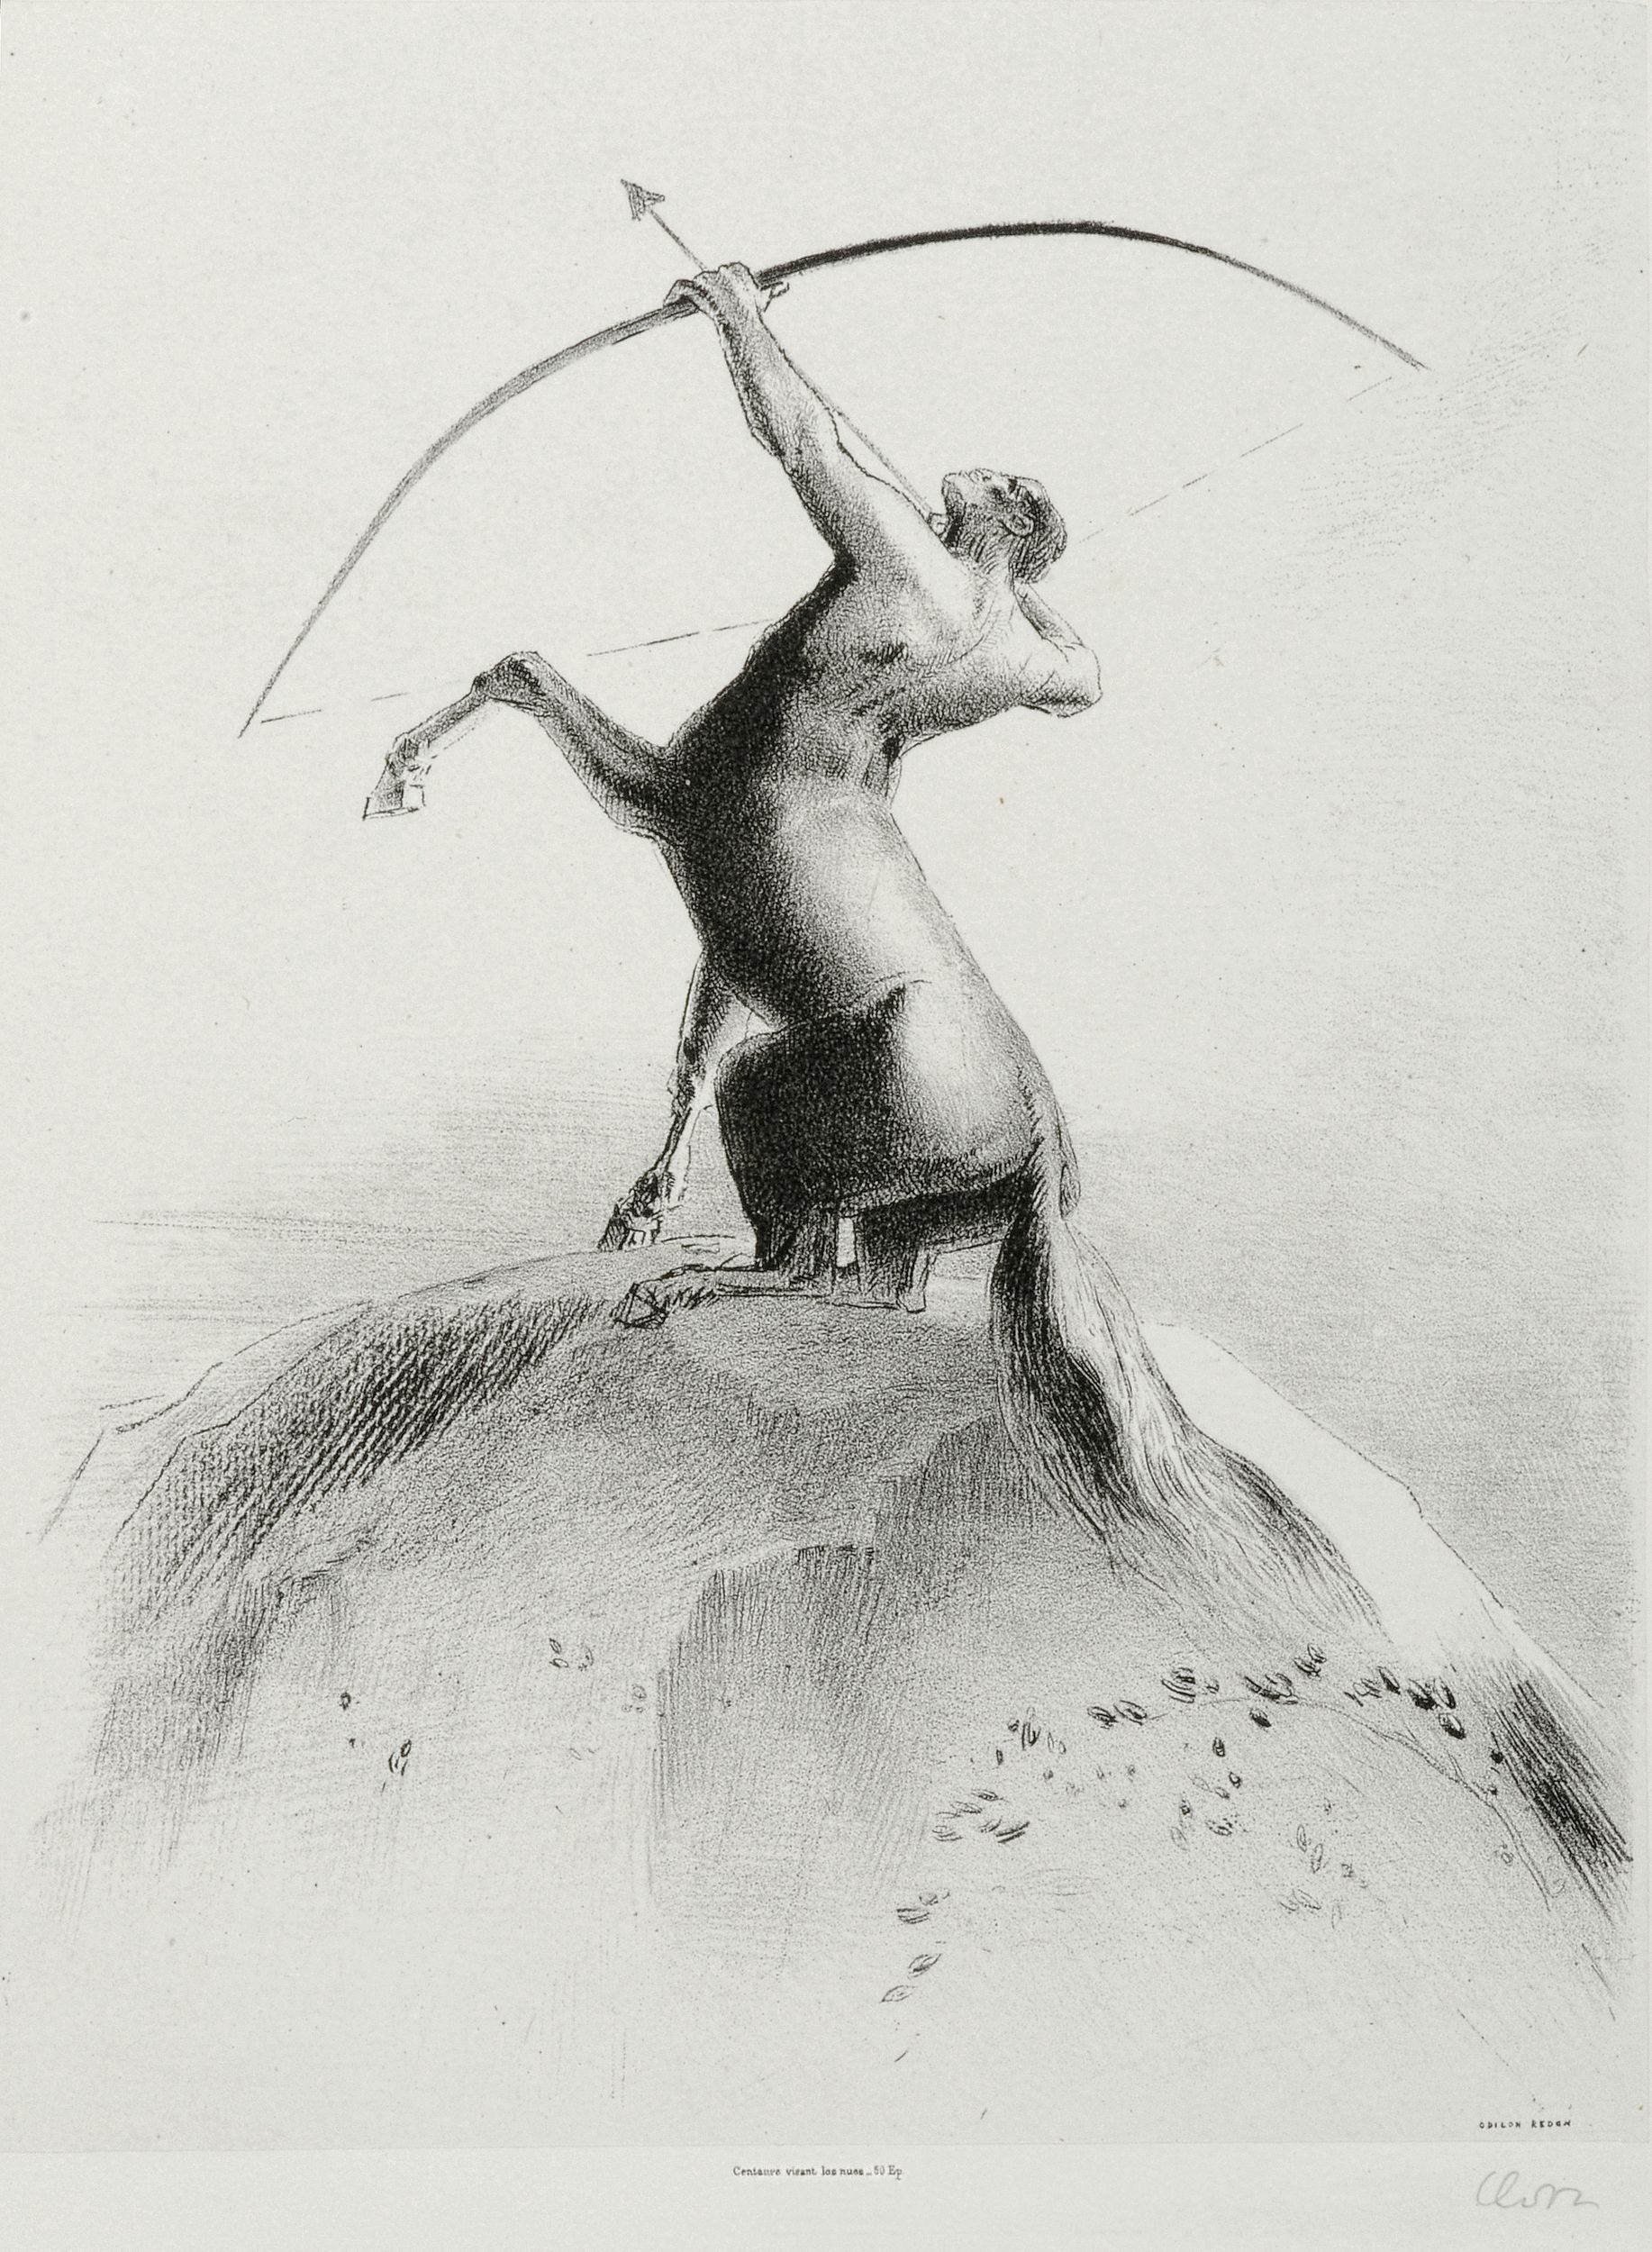 Odilon Redon, Centaure visant les nues, 1895